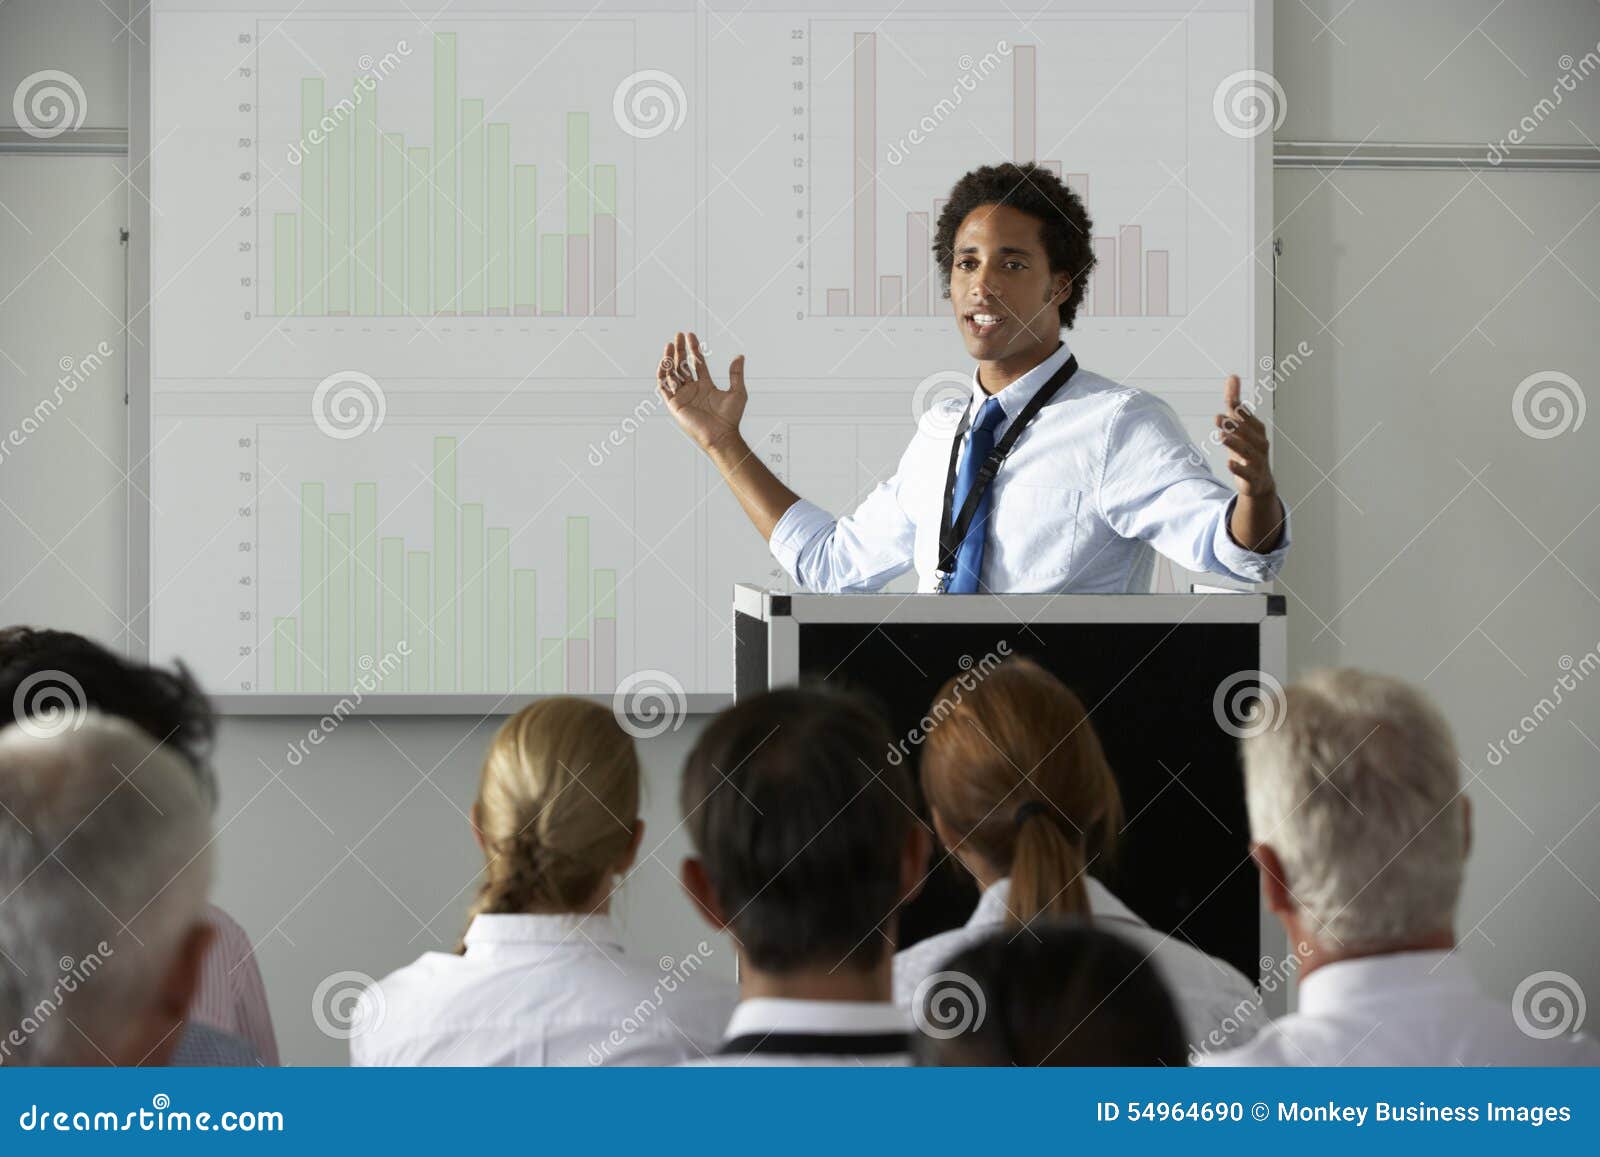 delivering a presentation